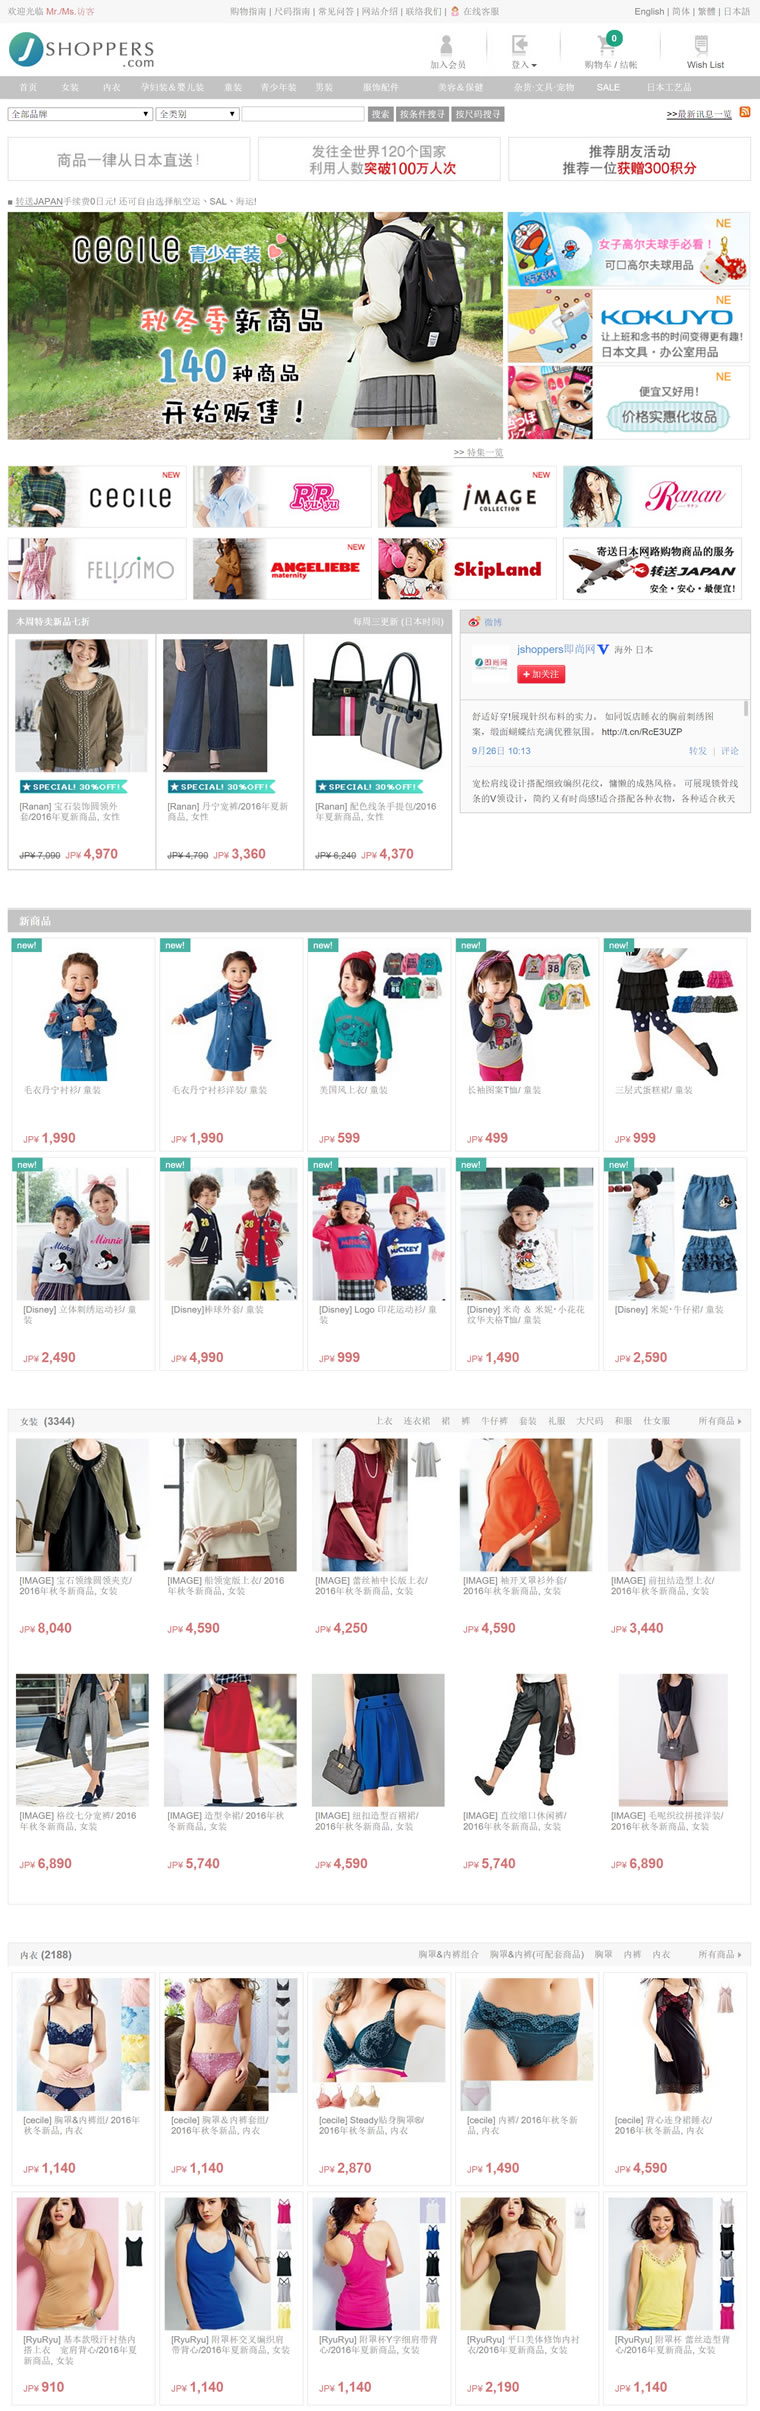 日本直送女装、内衣、孕妇装和童装：即尚网JSHOPPERS.com（支持中文）